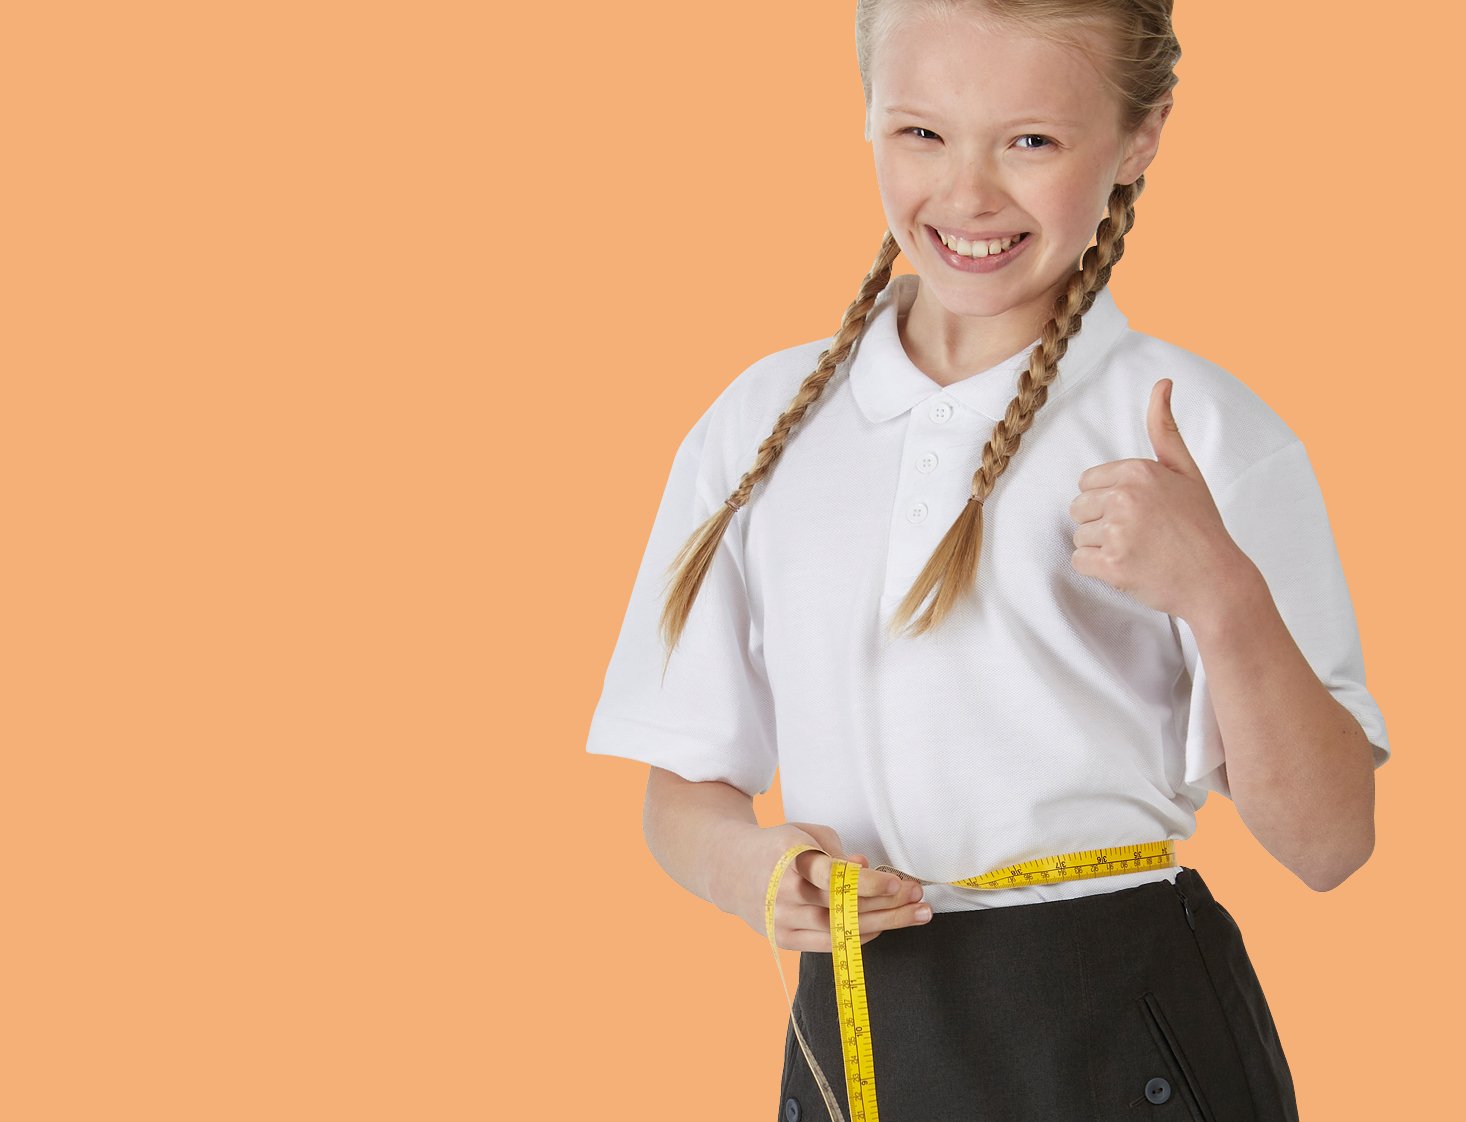 School Uniform Shop Online UK